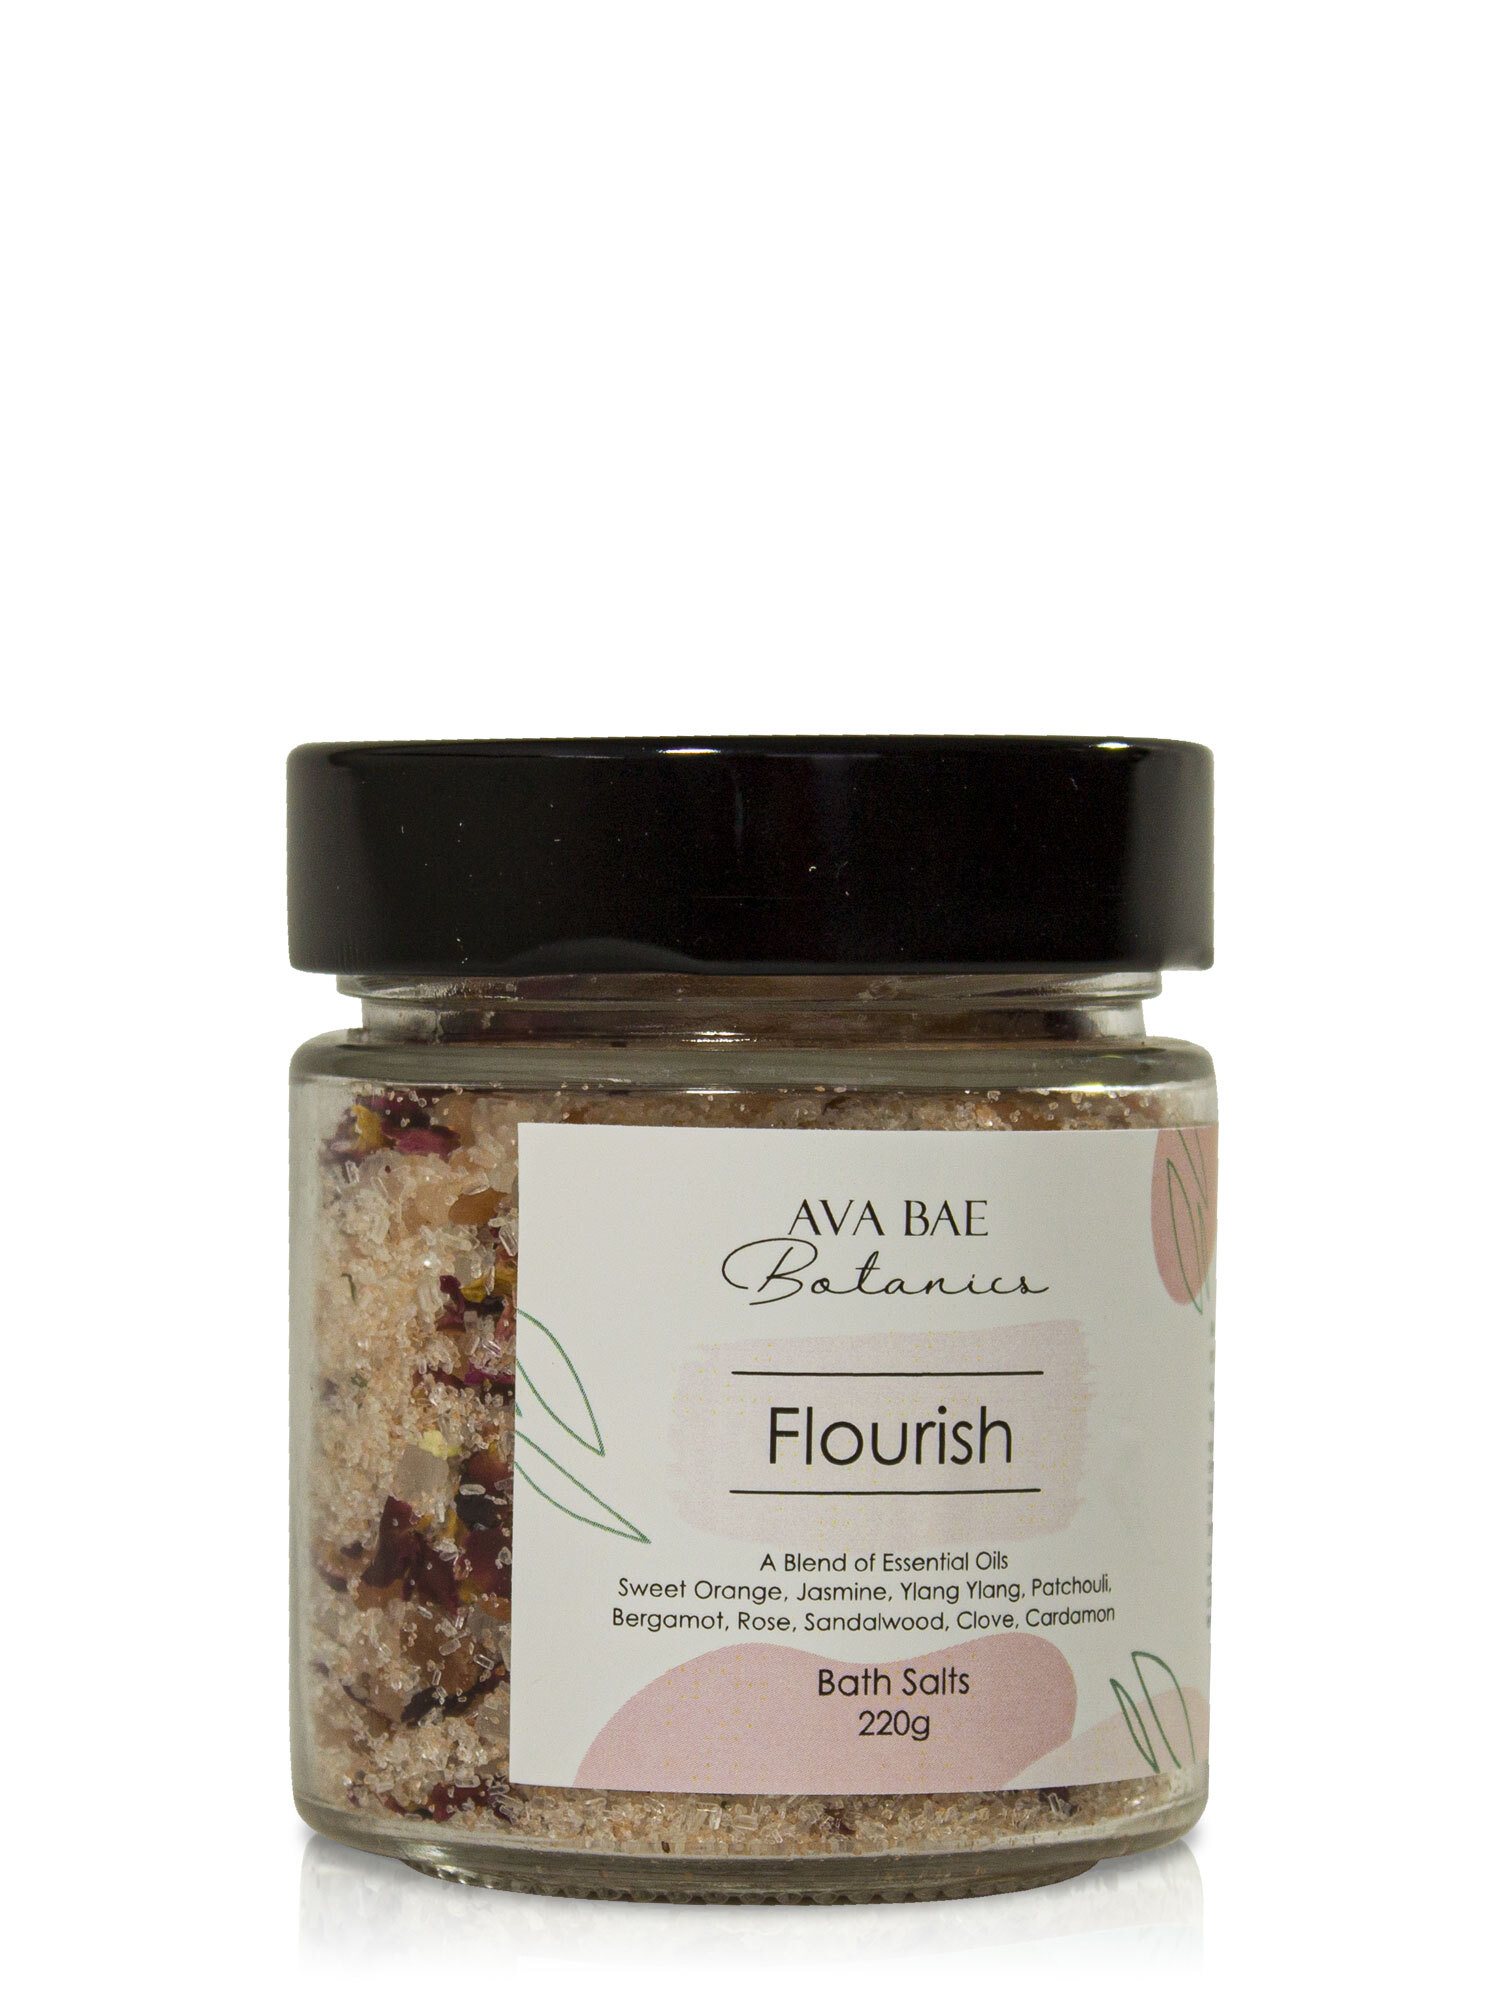 Ava Bae Botanics Bath Salts 220g - Flourish